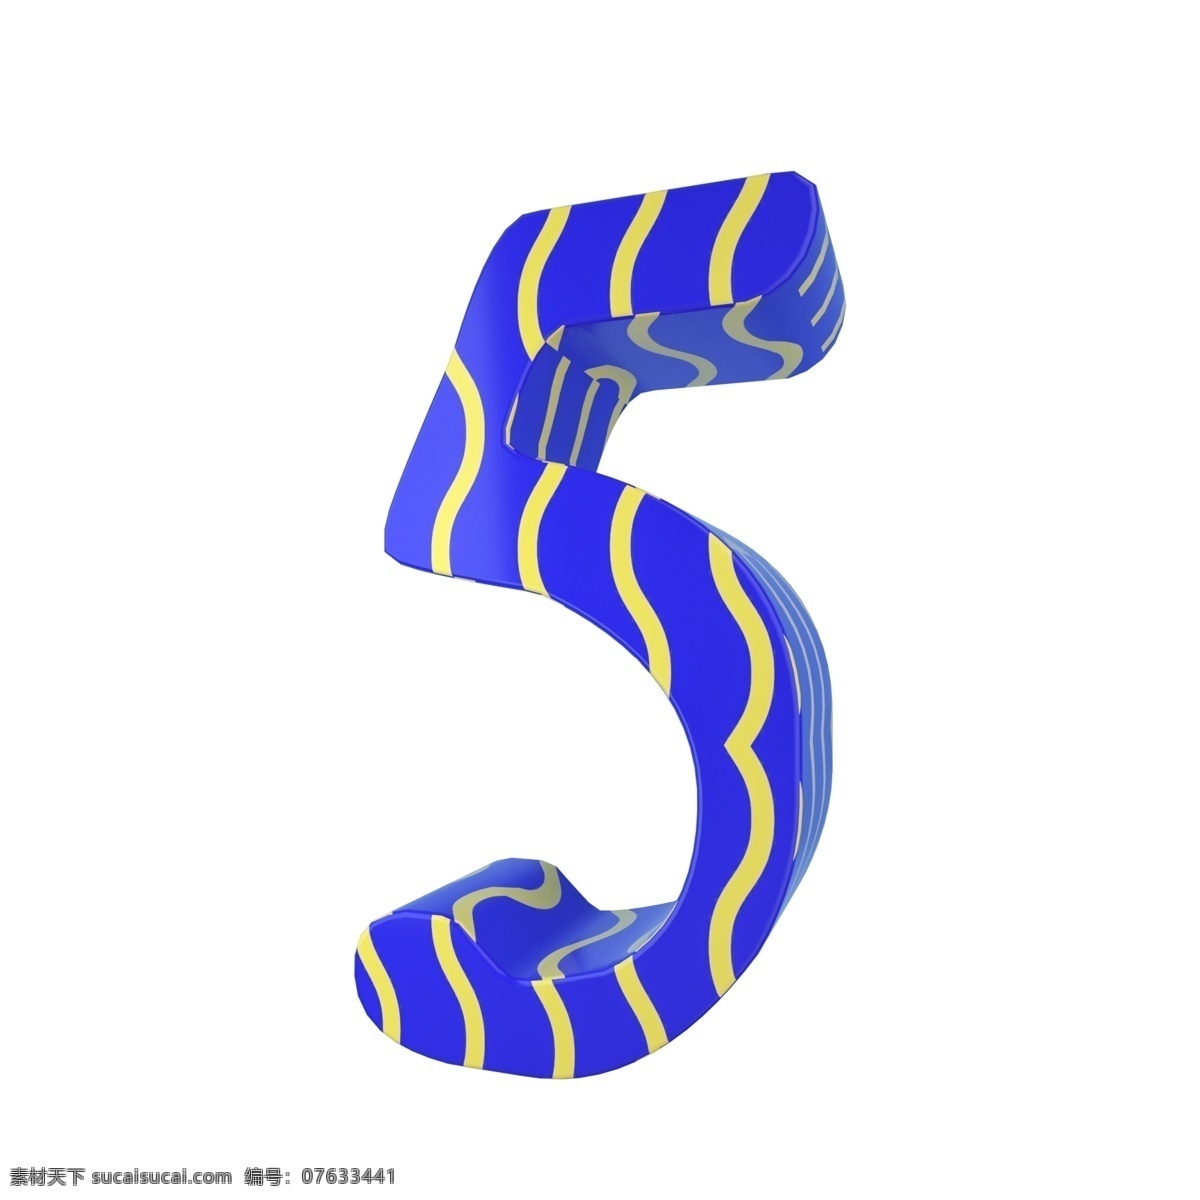 c4d 孟菲斯 风格 立体 数字 装饰 3d 孟菲斯风格 黄色 蓝色 创意数字 平面海报配图 电商淘宝装饰 数字5